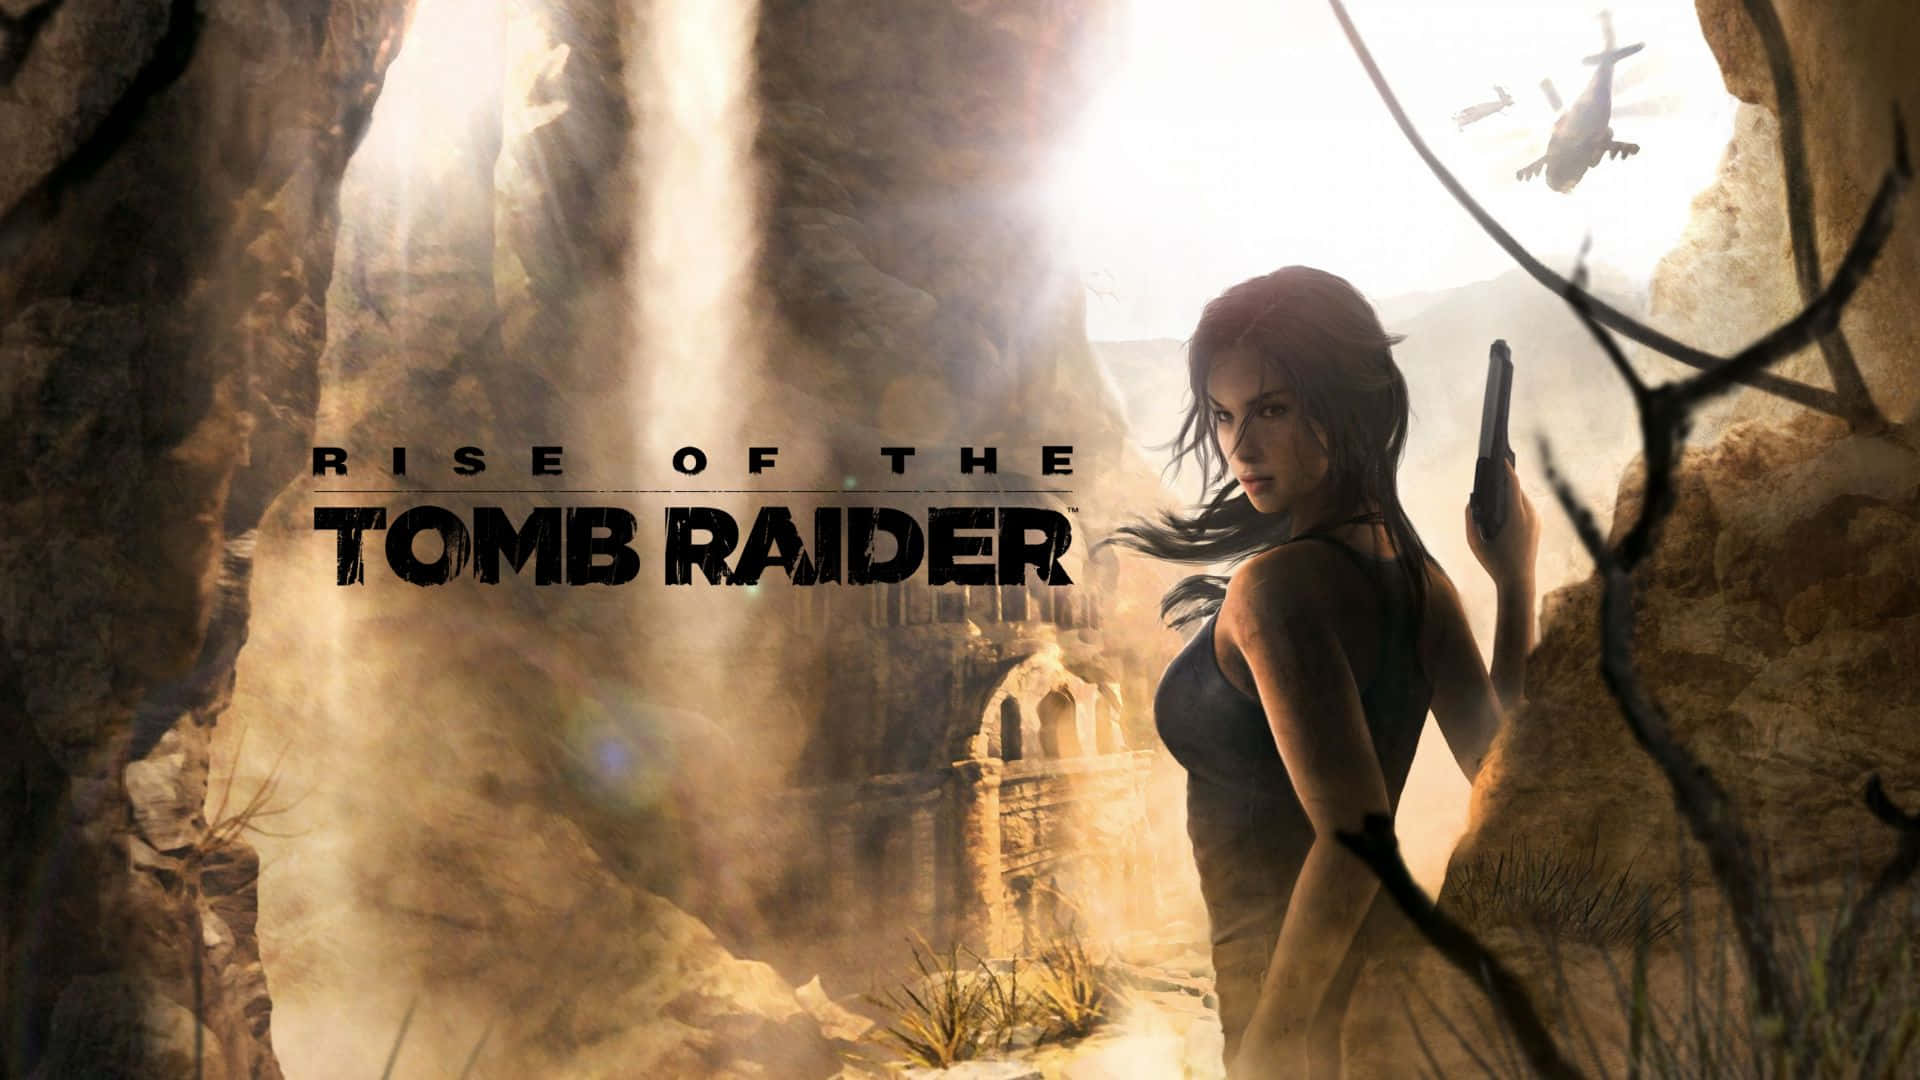 Fondode Pantalla De Lara Croft De Rise Of The Tomb Raider En 1080p.